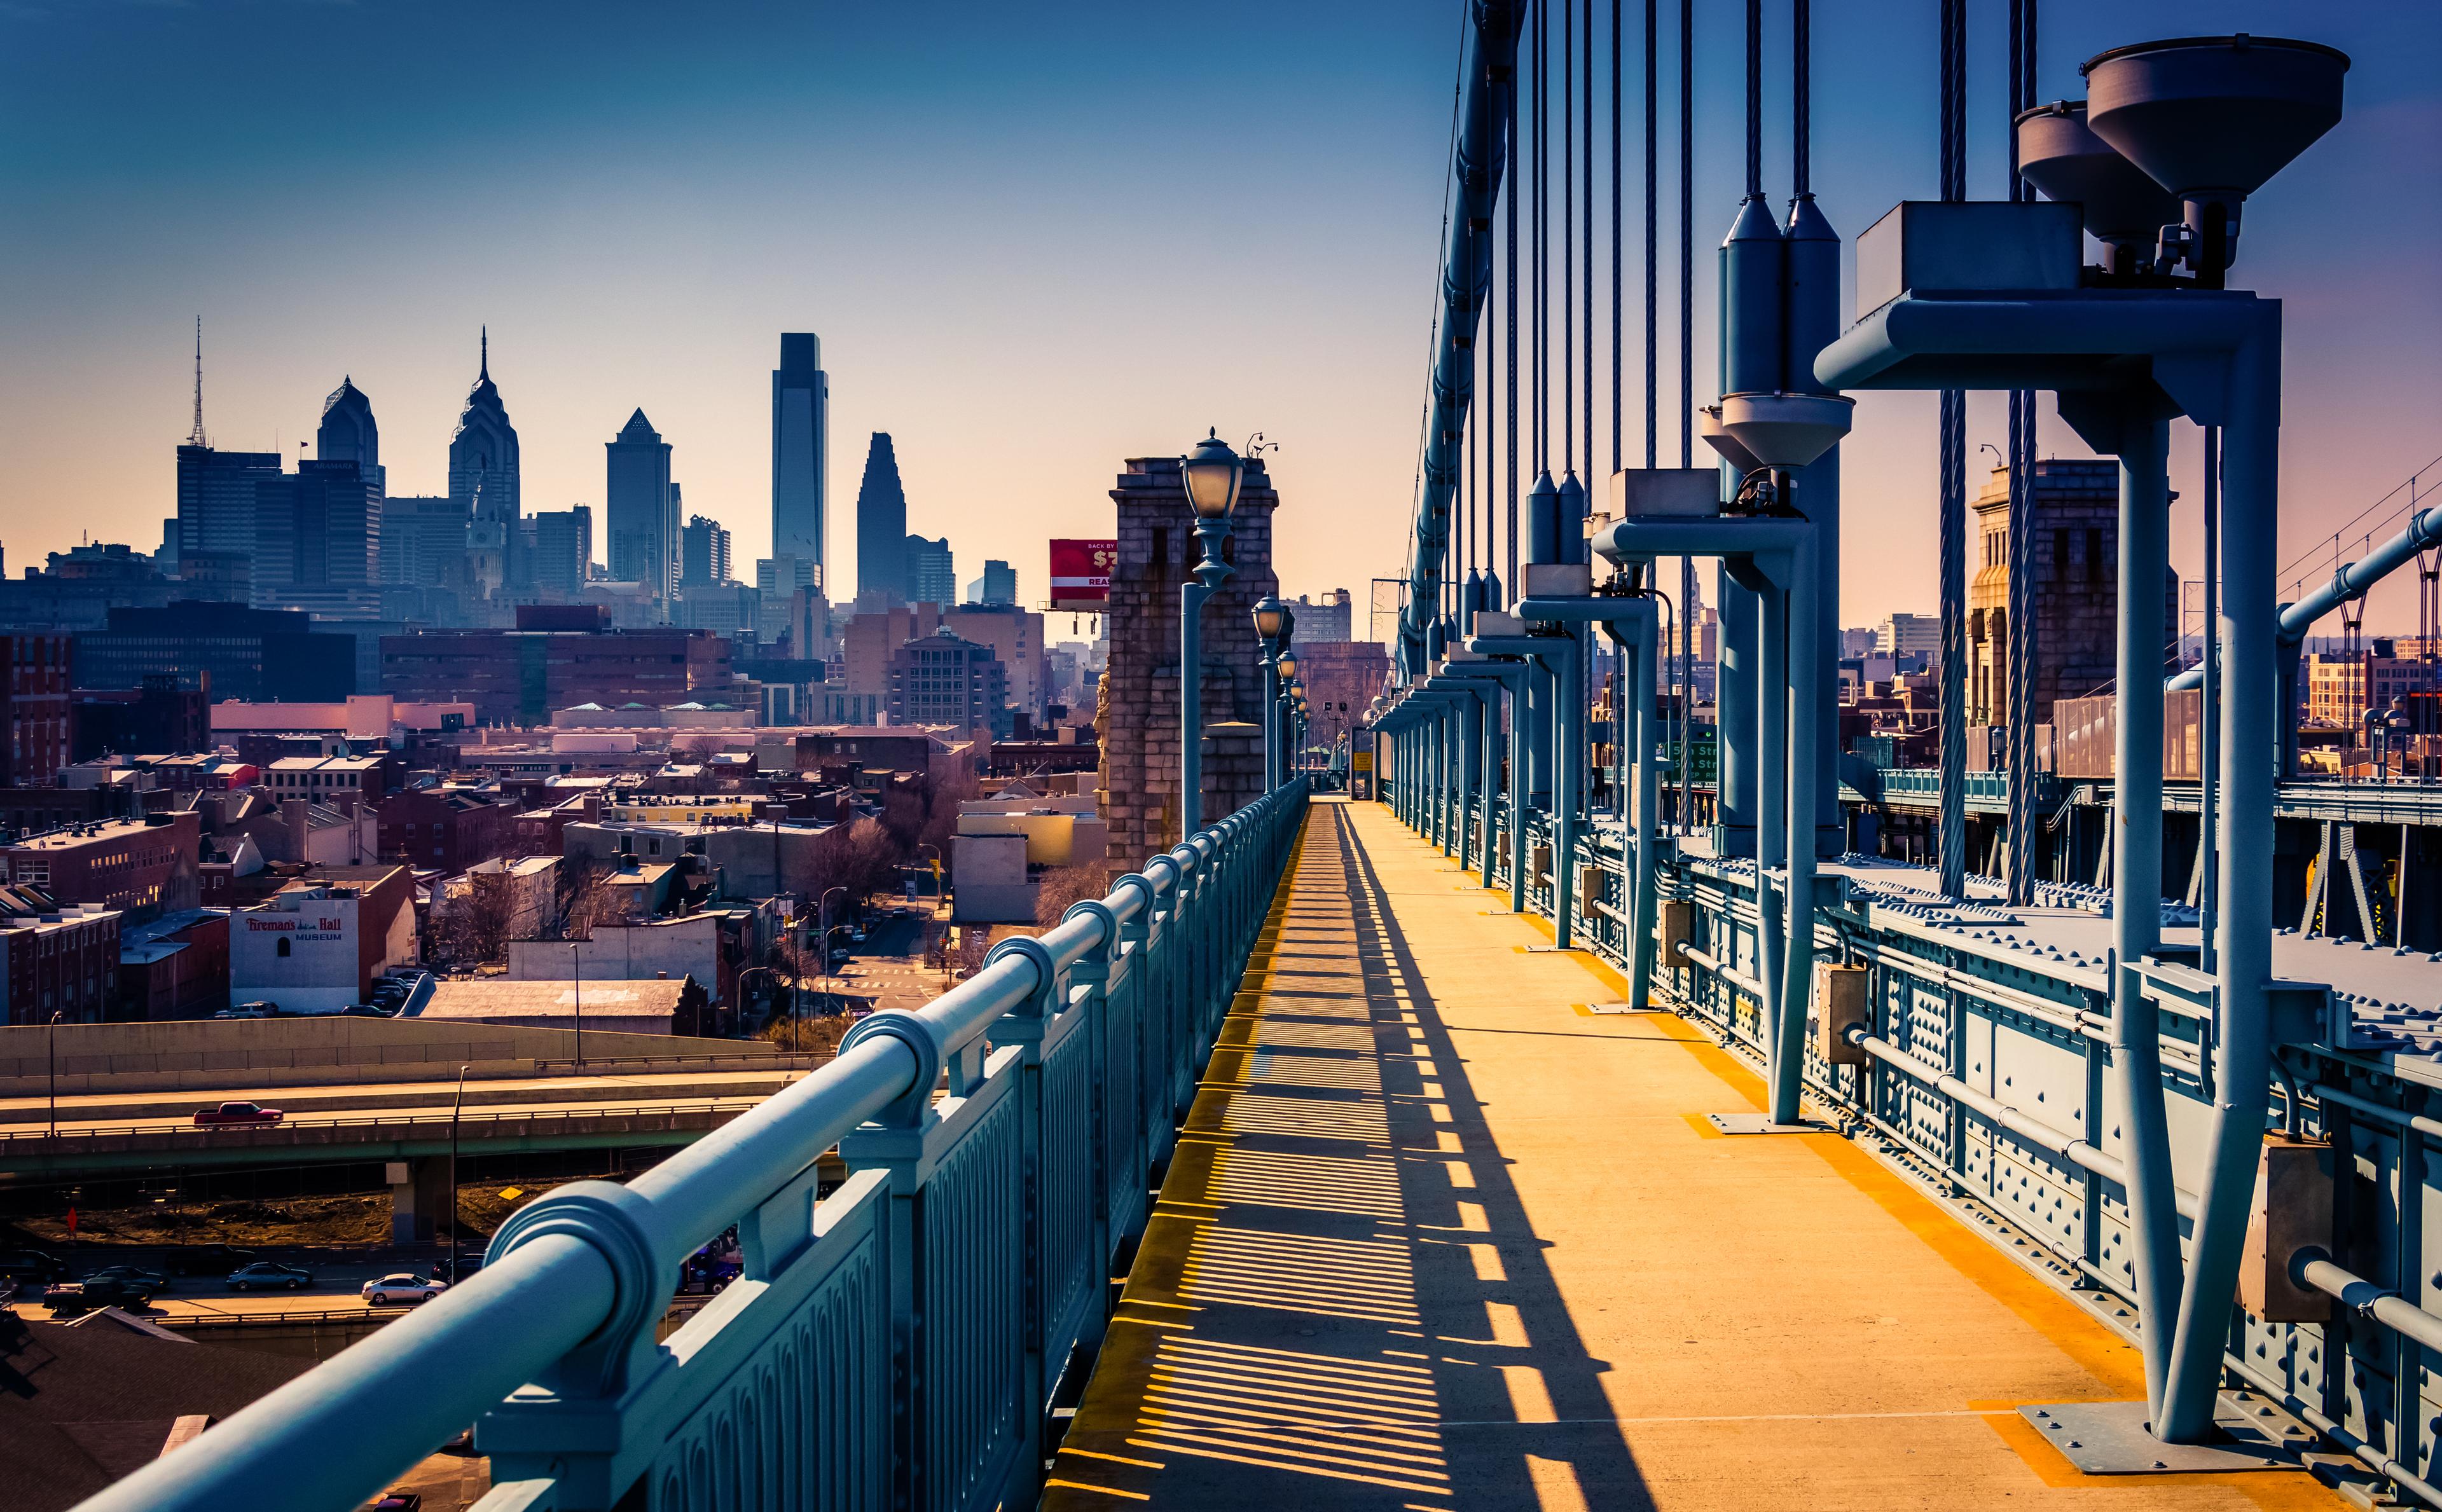 The Philadelphia city, cover photo